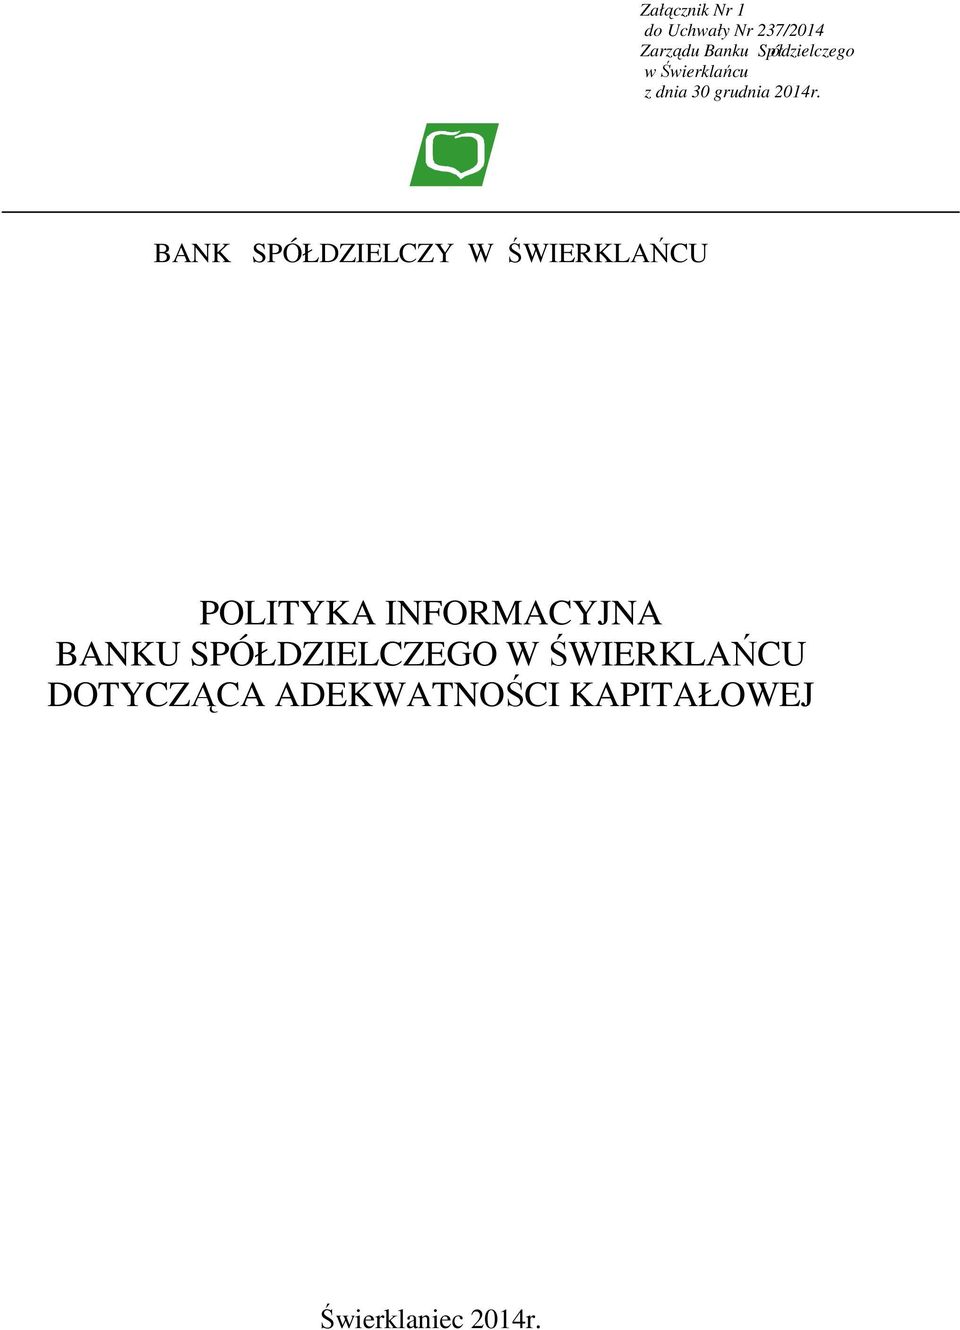 BANK SPÓŁDZIELCZY W ŚWIERKLAŃCU POLITYKA INFORMACYJNA BANKU